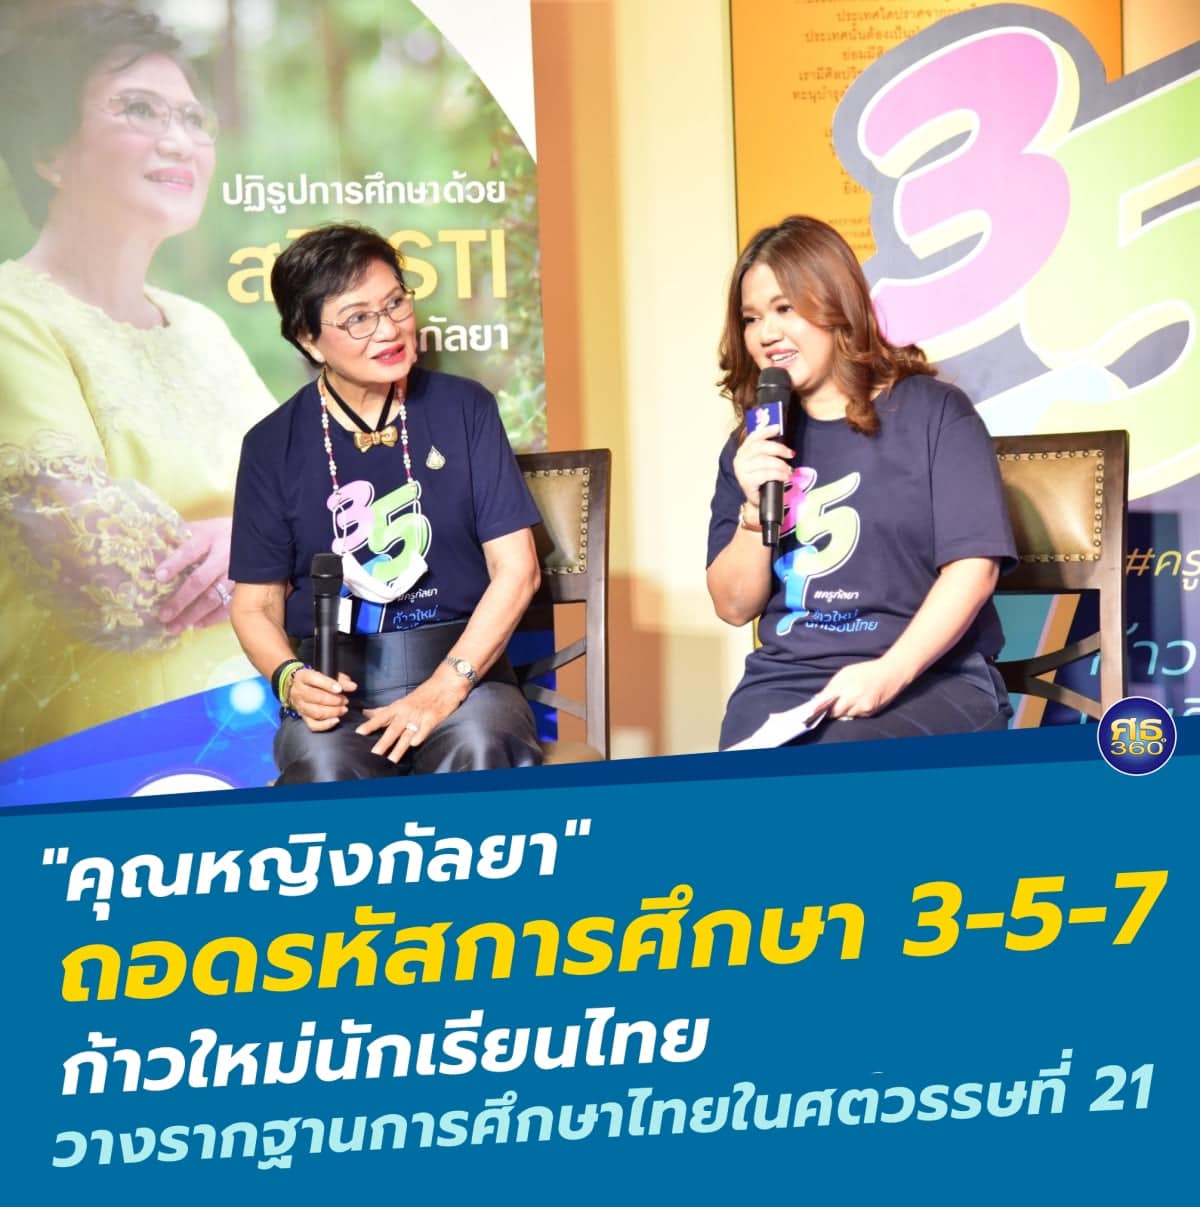 ถอดรหัสนโยบายการศึกษา 'คุณหญิงกัลยา' ก้าวใหม่นักเรียนไทย ผ่าน 3 กลไก 5 นโยบาย 7 โครงการ